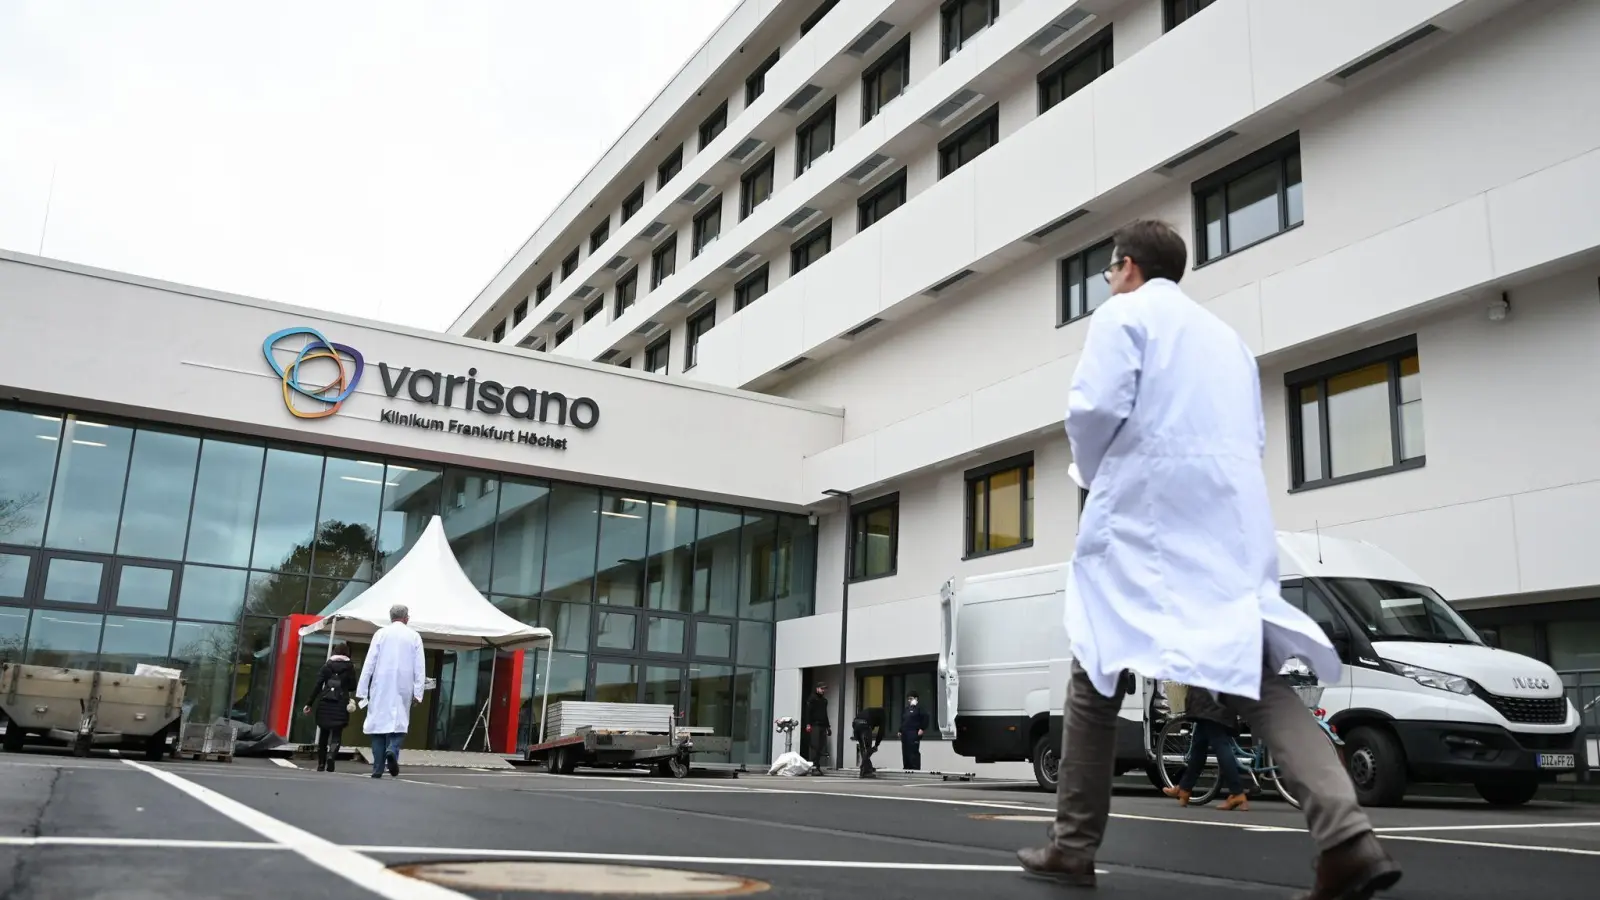 Das Varisano-Klinikum in Frankfurt ist eins von acht Krankenhäusern in Frankfurt, die „Medizinische Soforthilfe nach Vergewaltigung“ anbieten. (Foto: Arne Dedert/dpa)